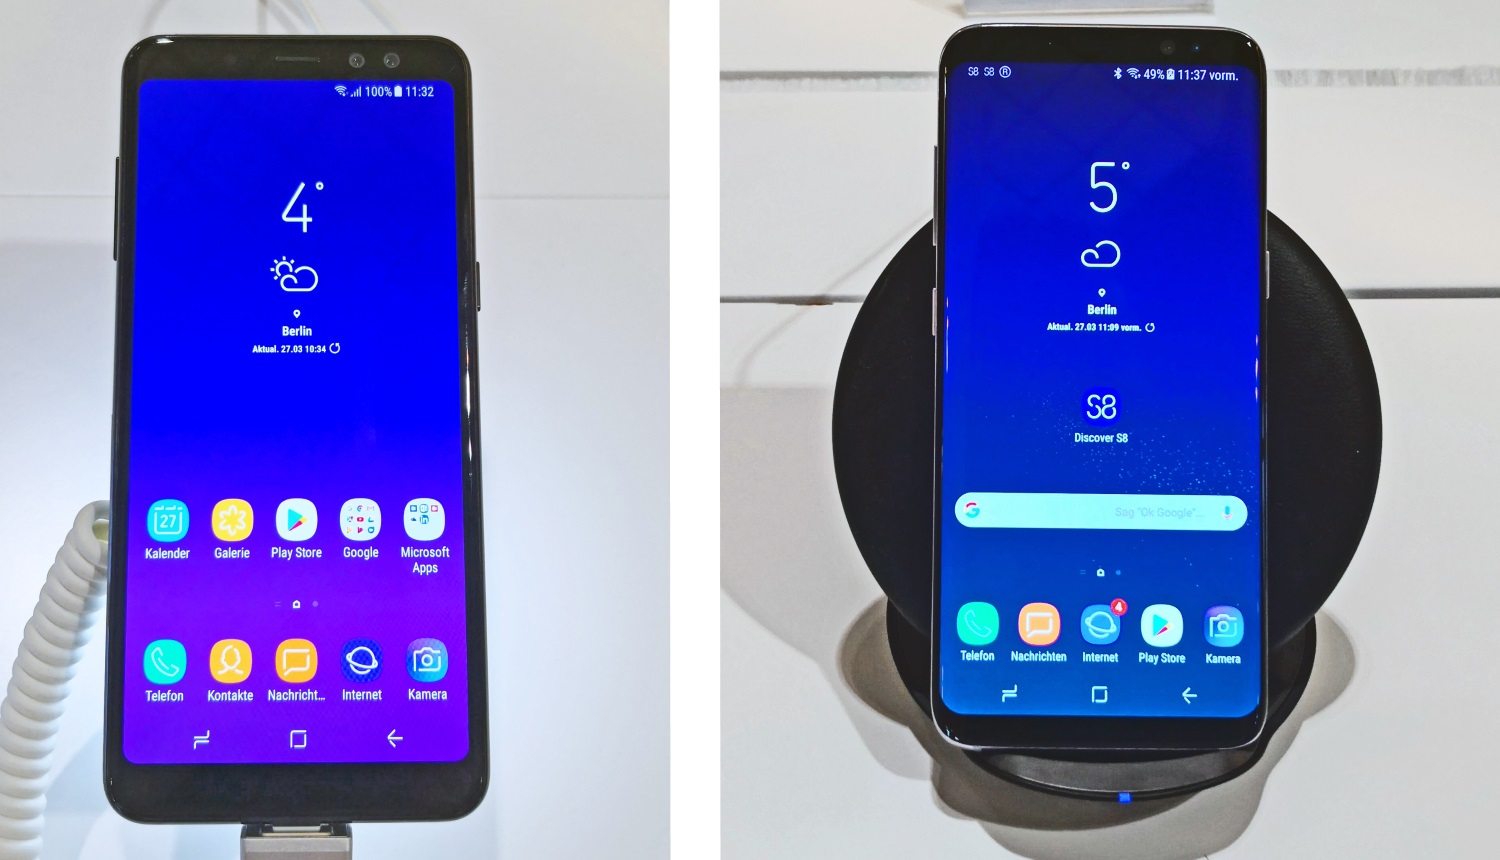 Samsung Galaxy A8 (2018) versus Galaxy S8